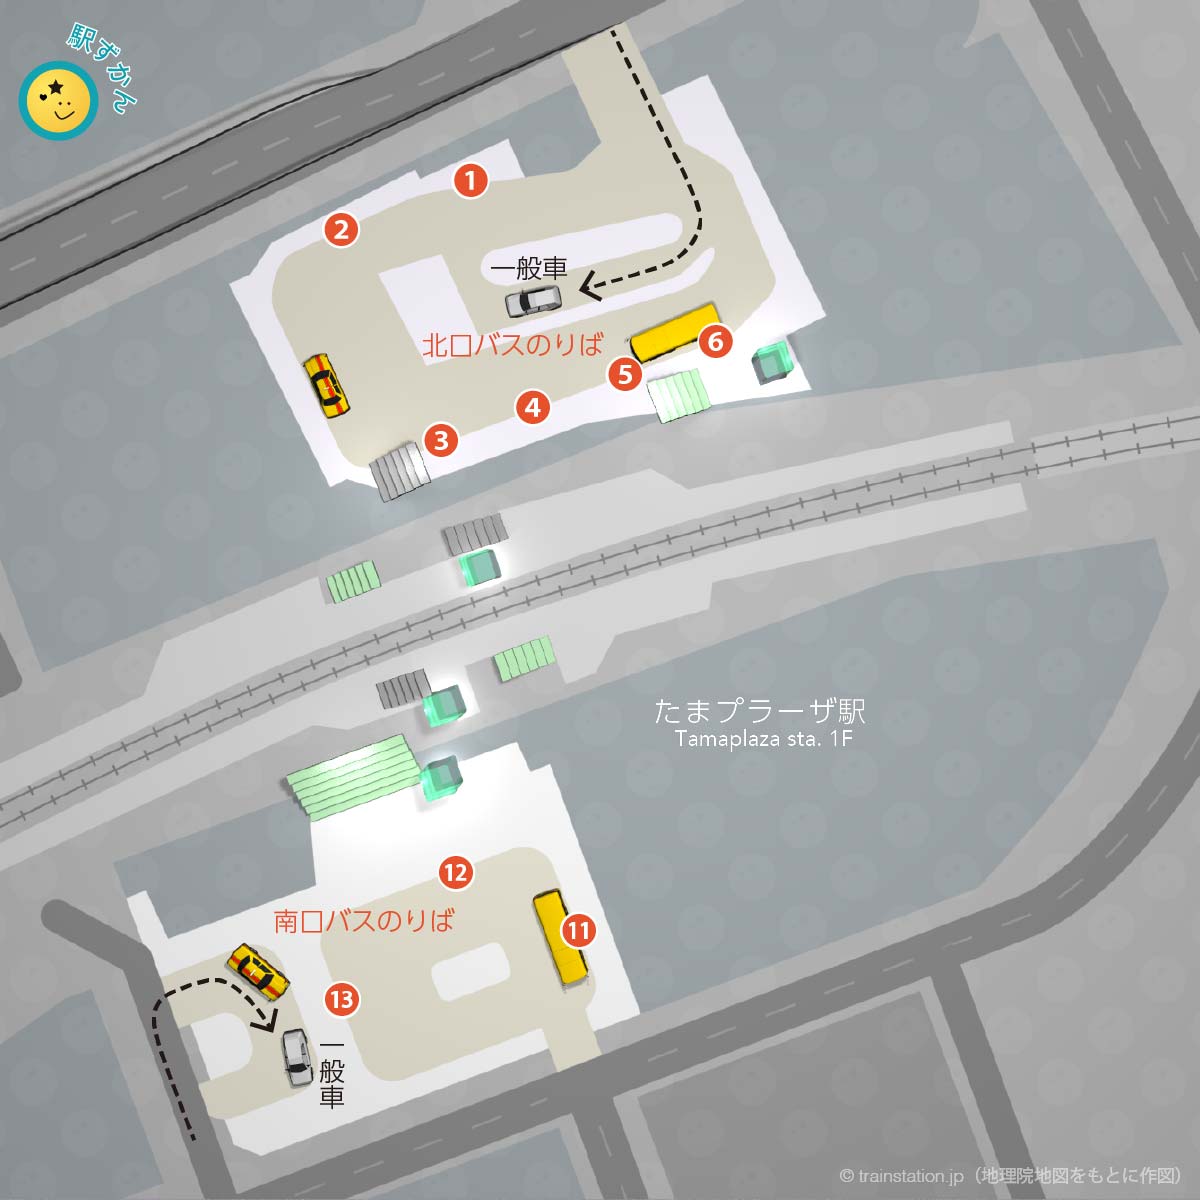 たまプラーザ駅ロータリーバス乗り場と一般車寄せマップ